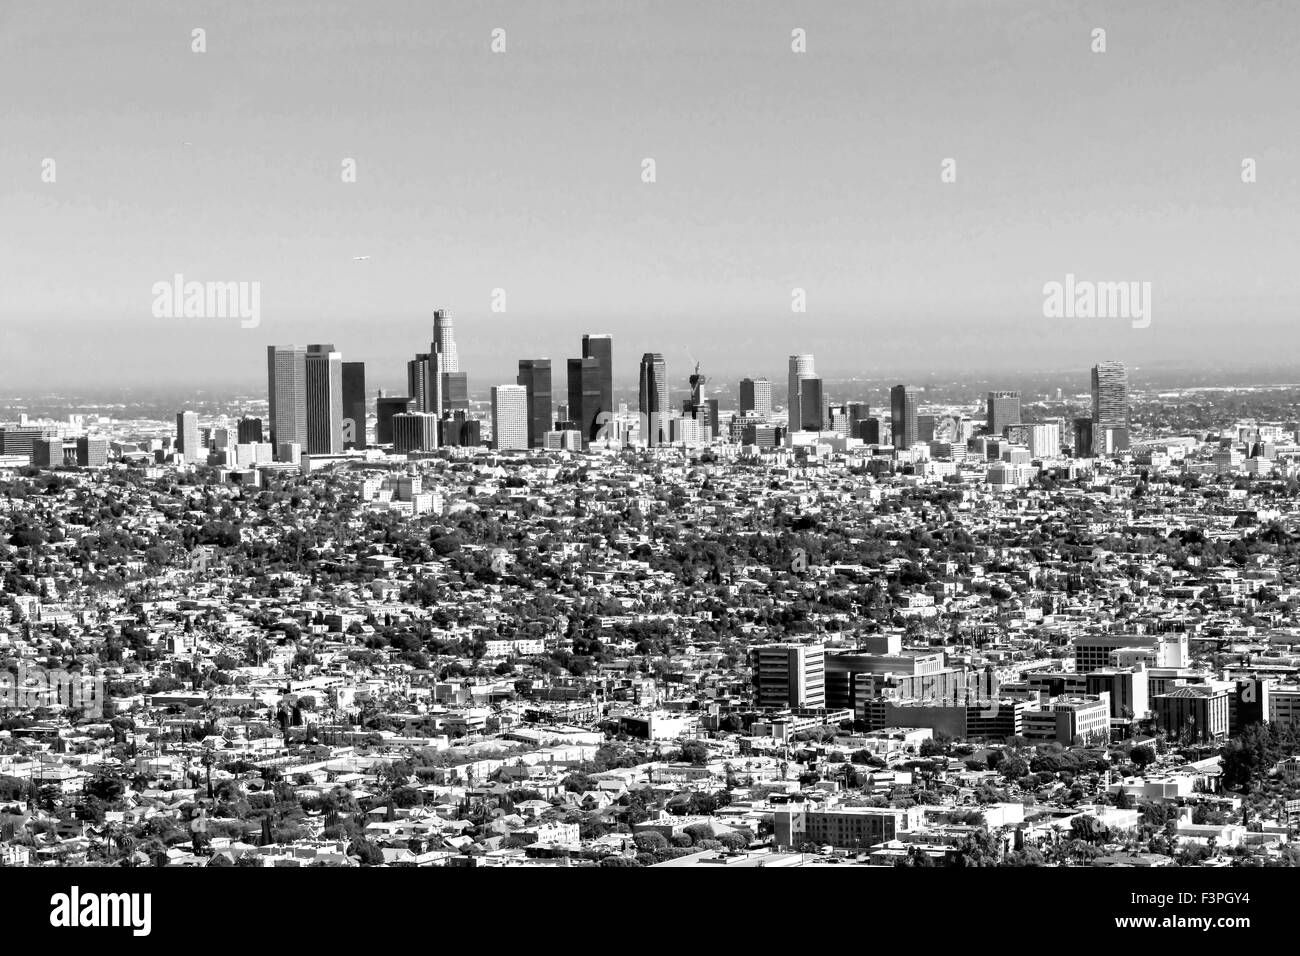 Vista de la ciudad de Los Ángeles desde el Observatorio Griffith Foto de stock